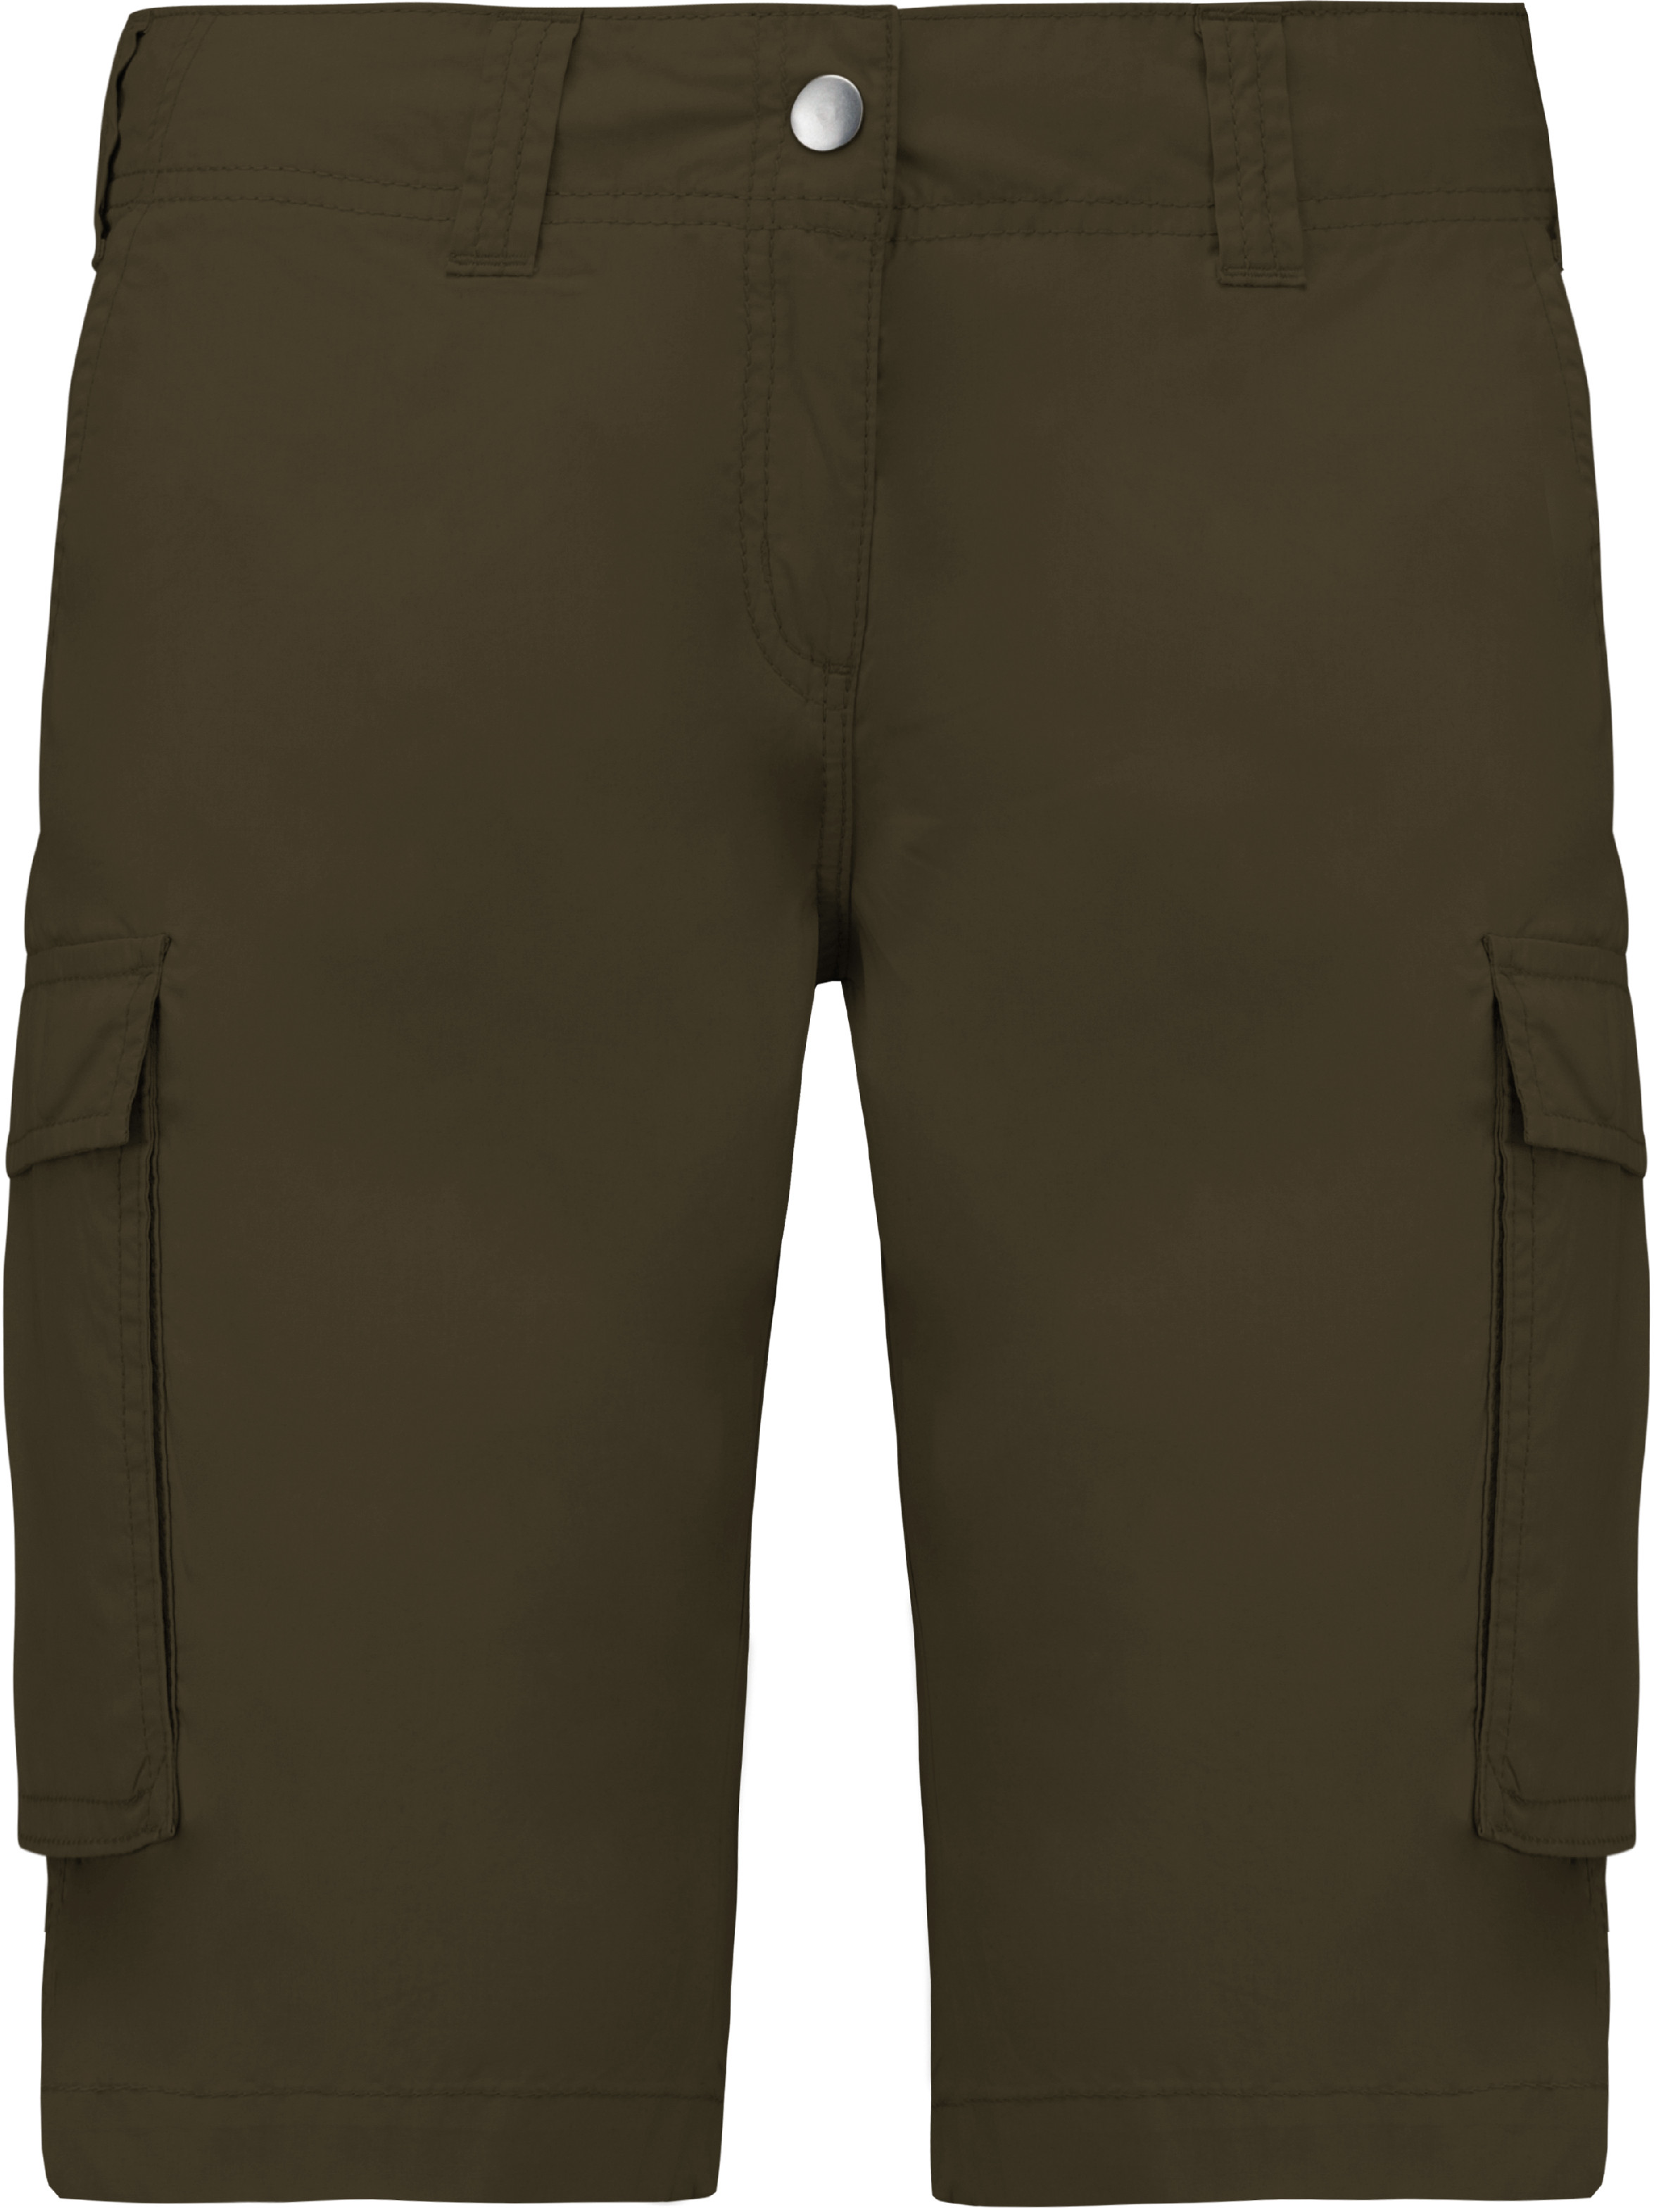 Dámské šortky s kapsami - Bermudy K756 Barva: khaki, Velikost: 38